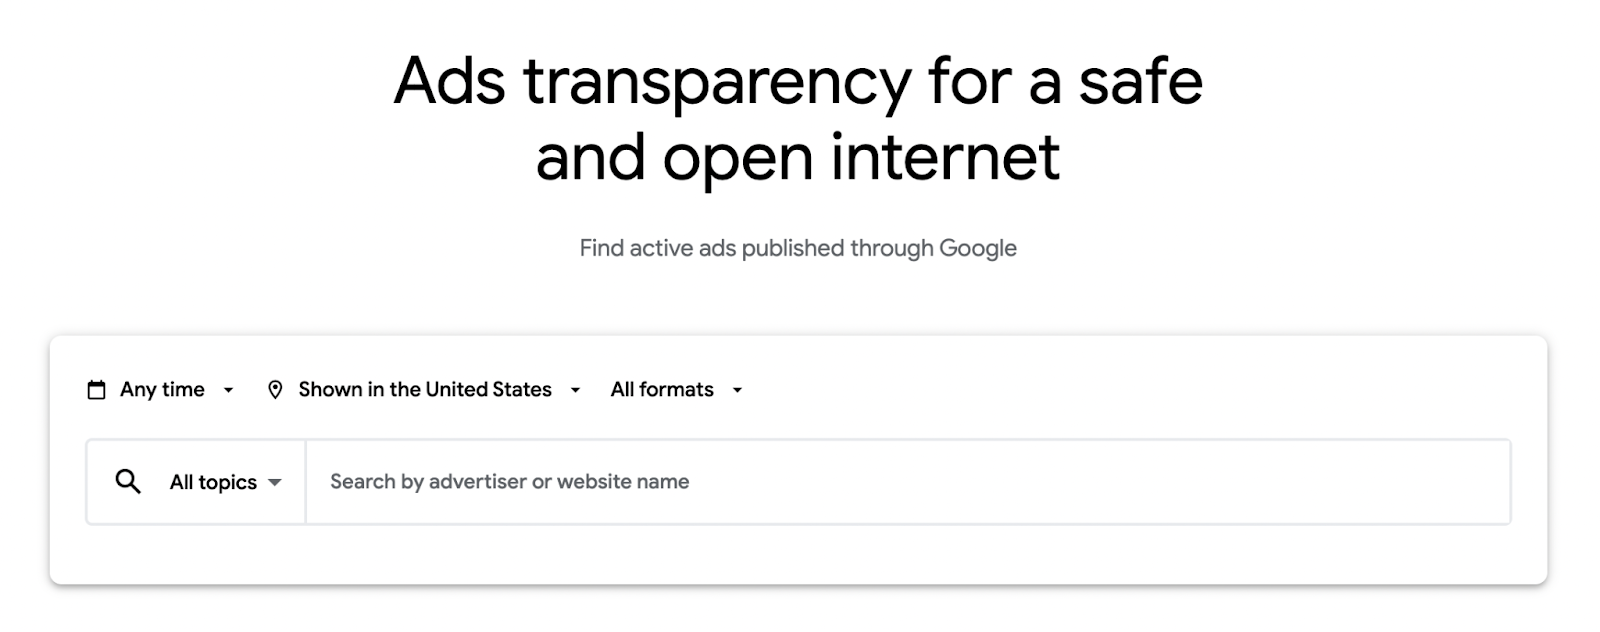 PPC internazionale, Centro per la trasparenza di Google Ads